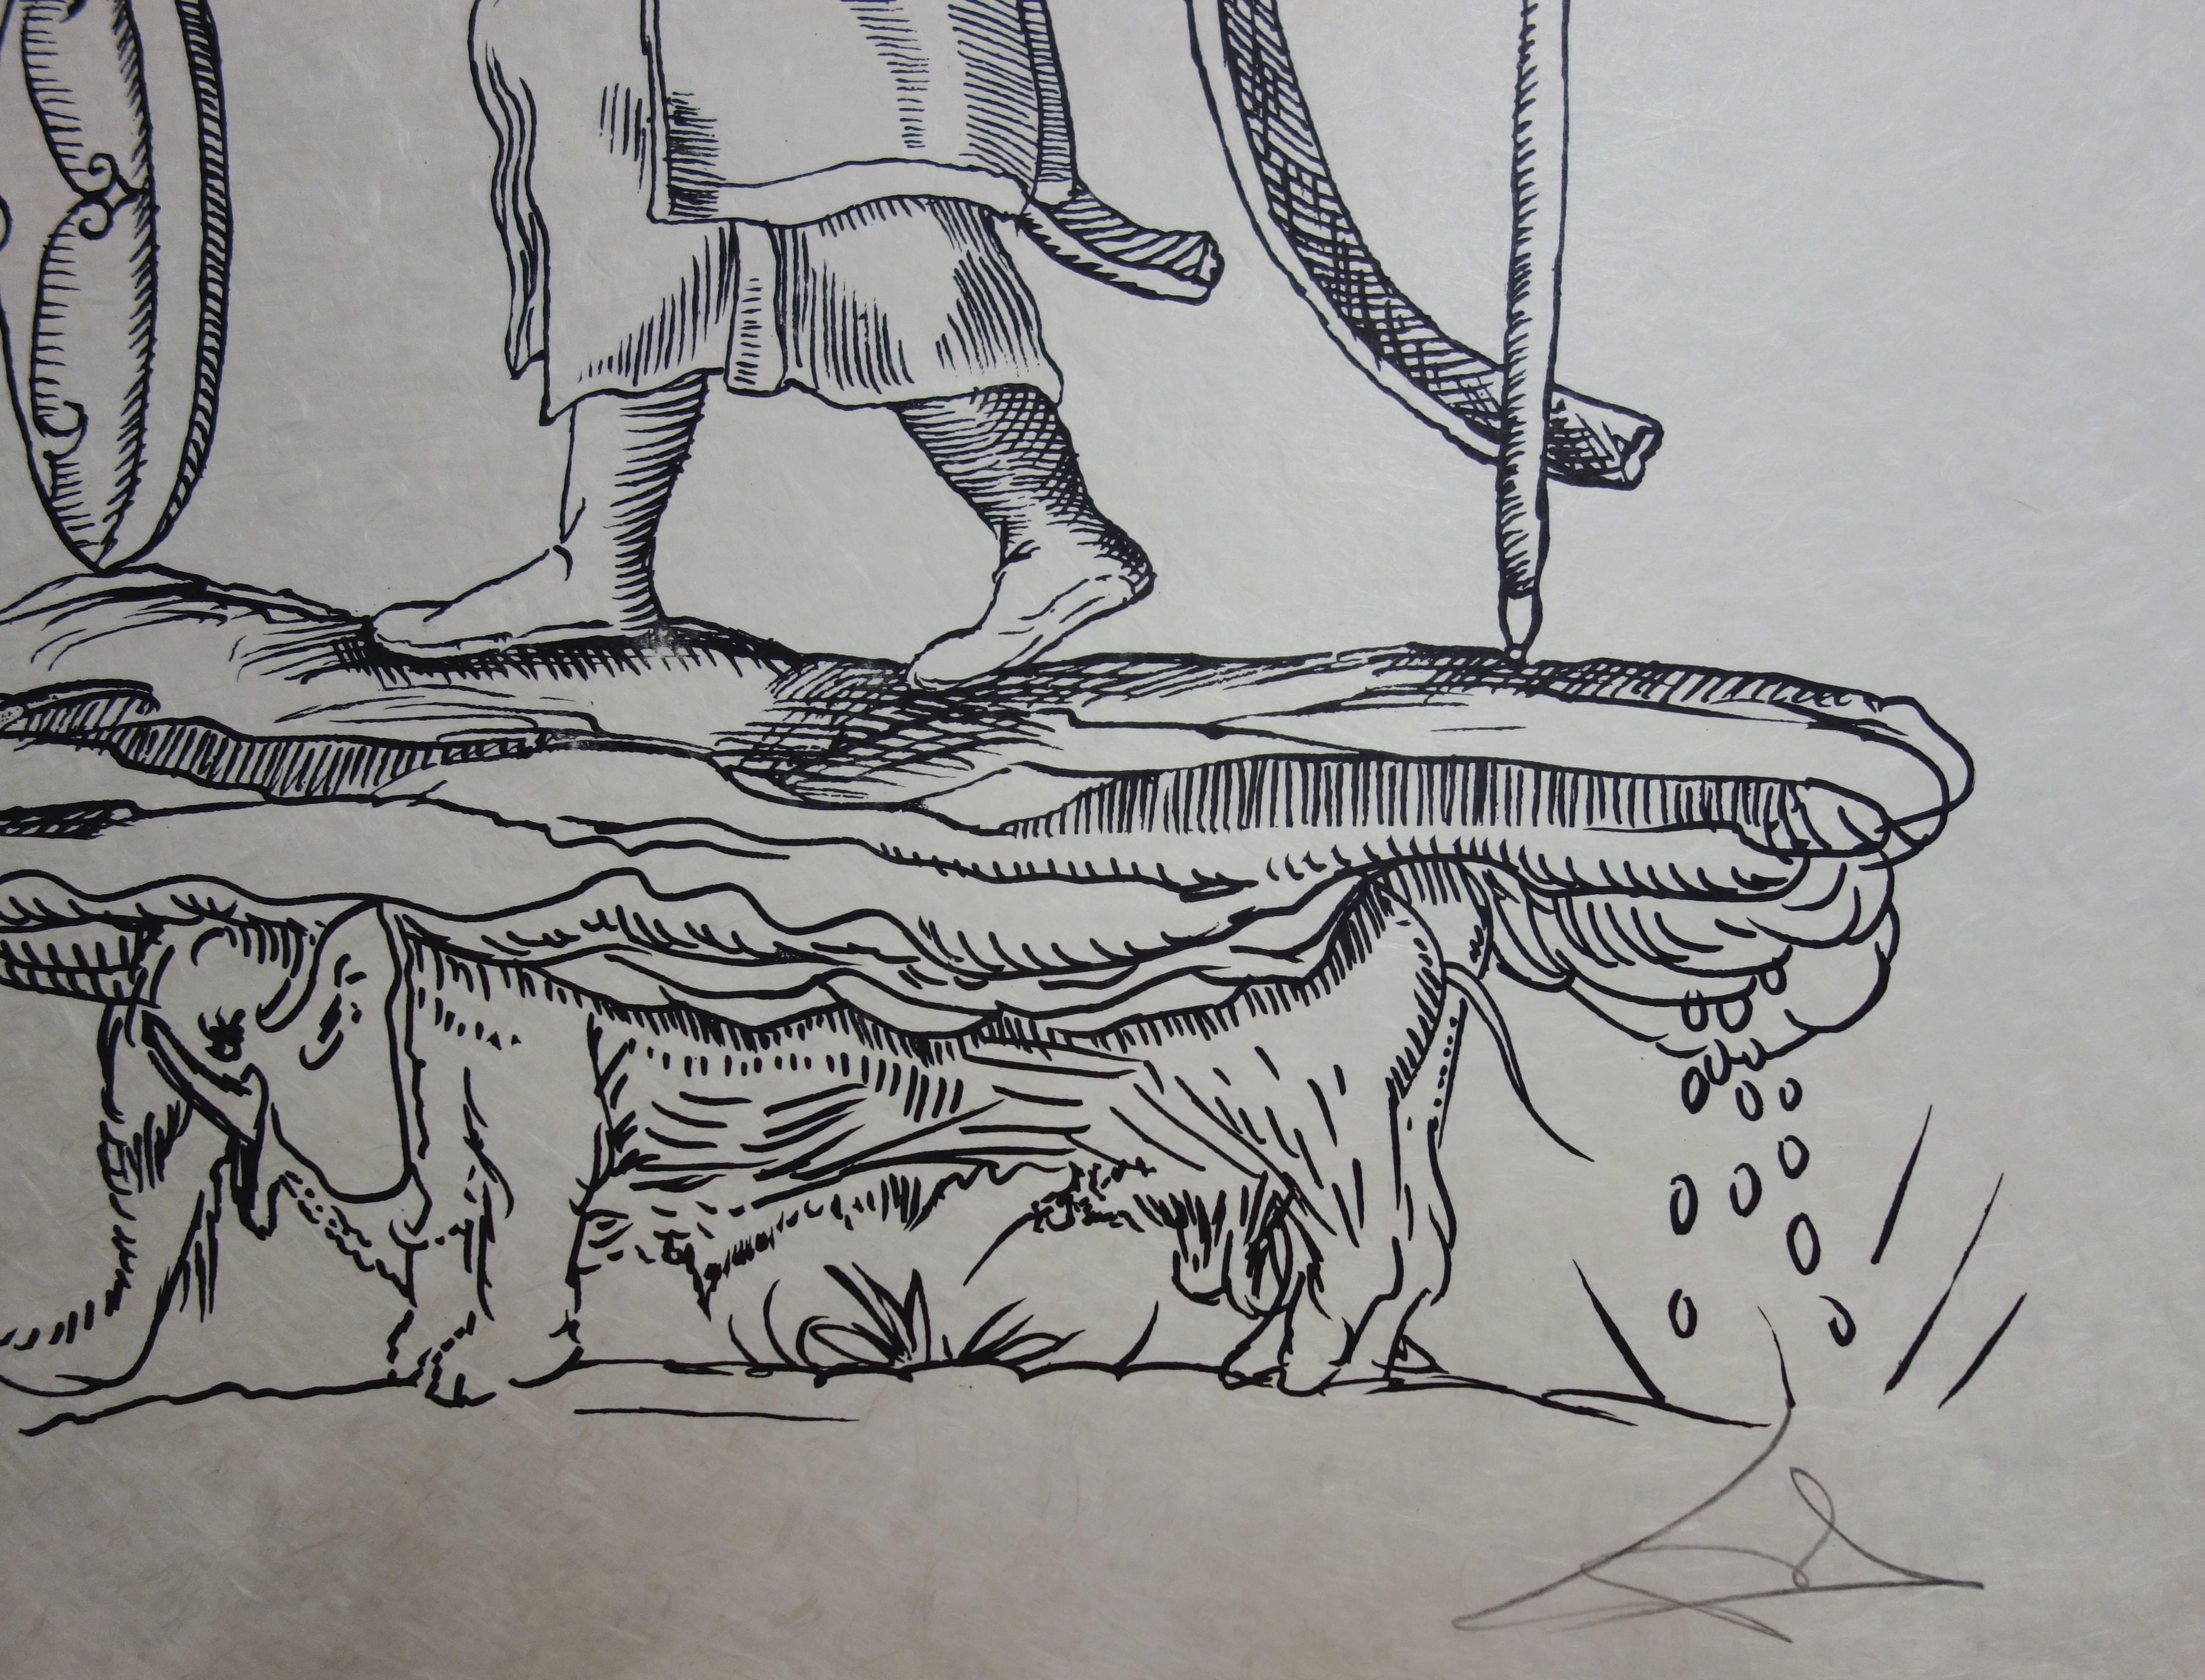 Pantagruel : Plate 8 - The Elephant Man - Original handsigned lithograph 1